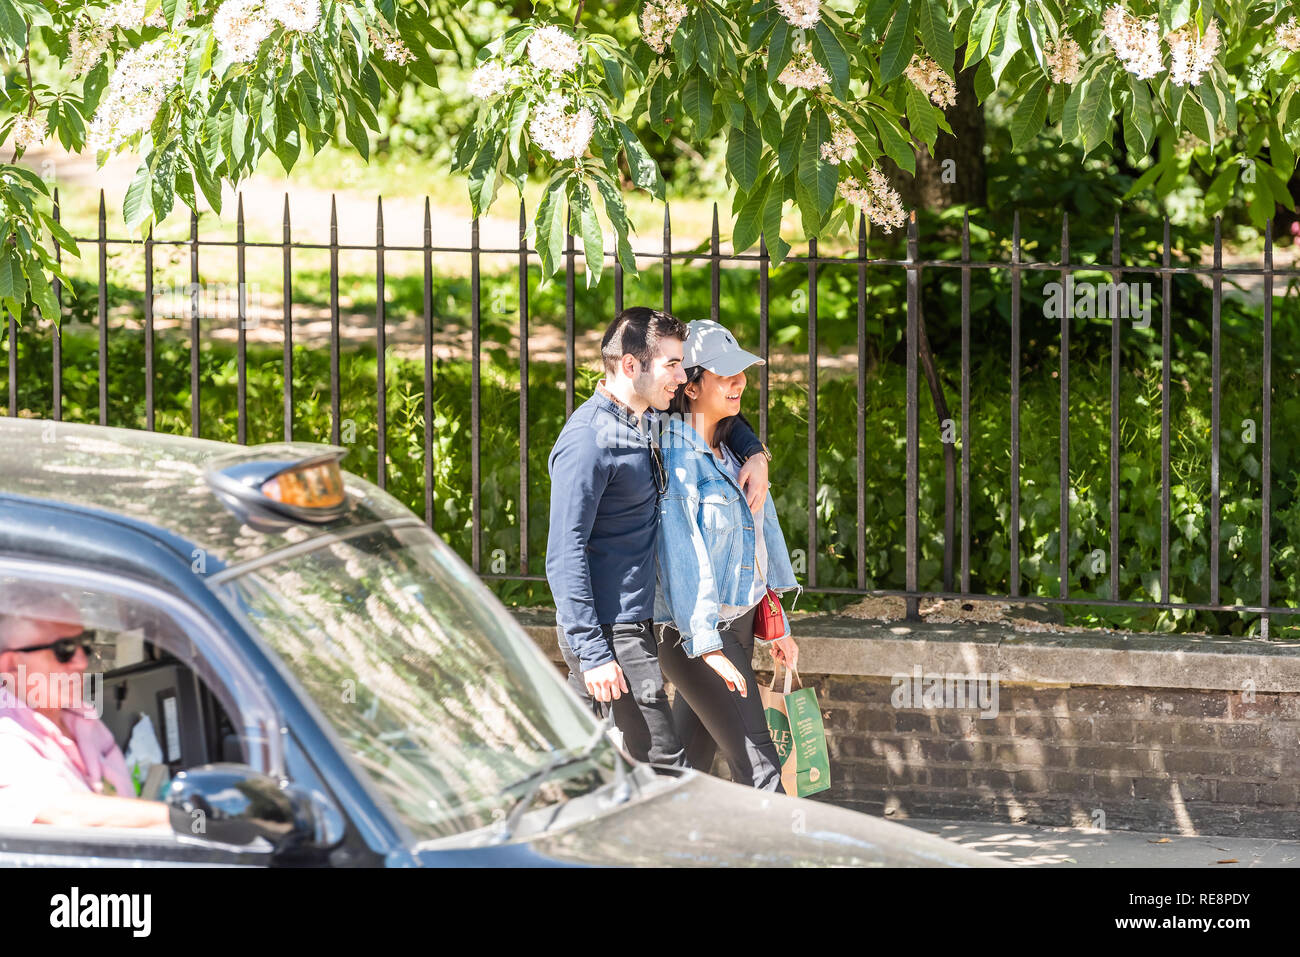 London, Regno Unito - 22 Giugno 2018: due persone coppia giovane ridere sorridere i pedoni a camminare sul marciapiede strada durante la soleggiata giornata estiva da Hyde park Foto Stock